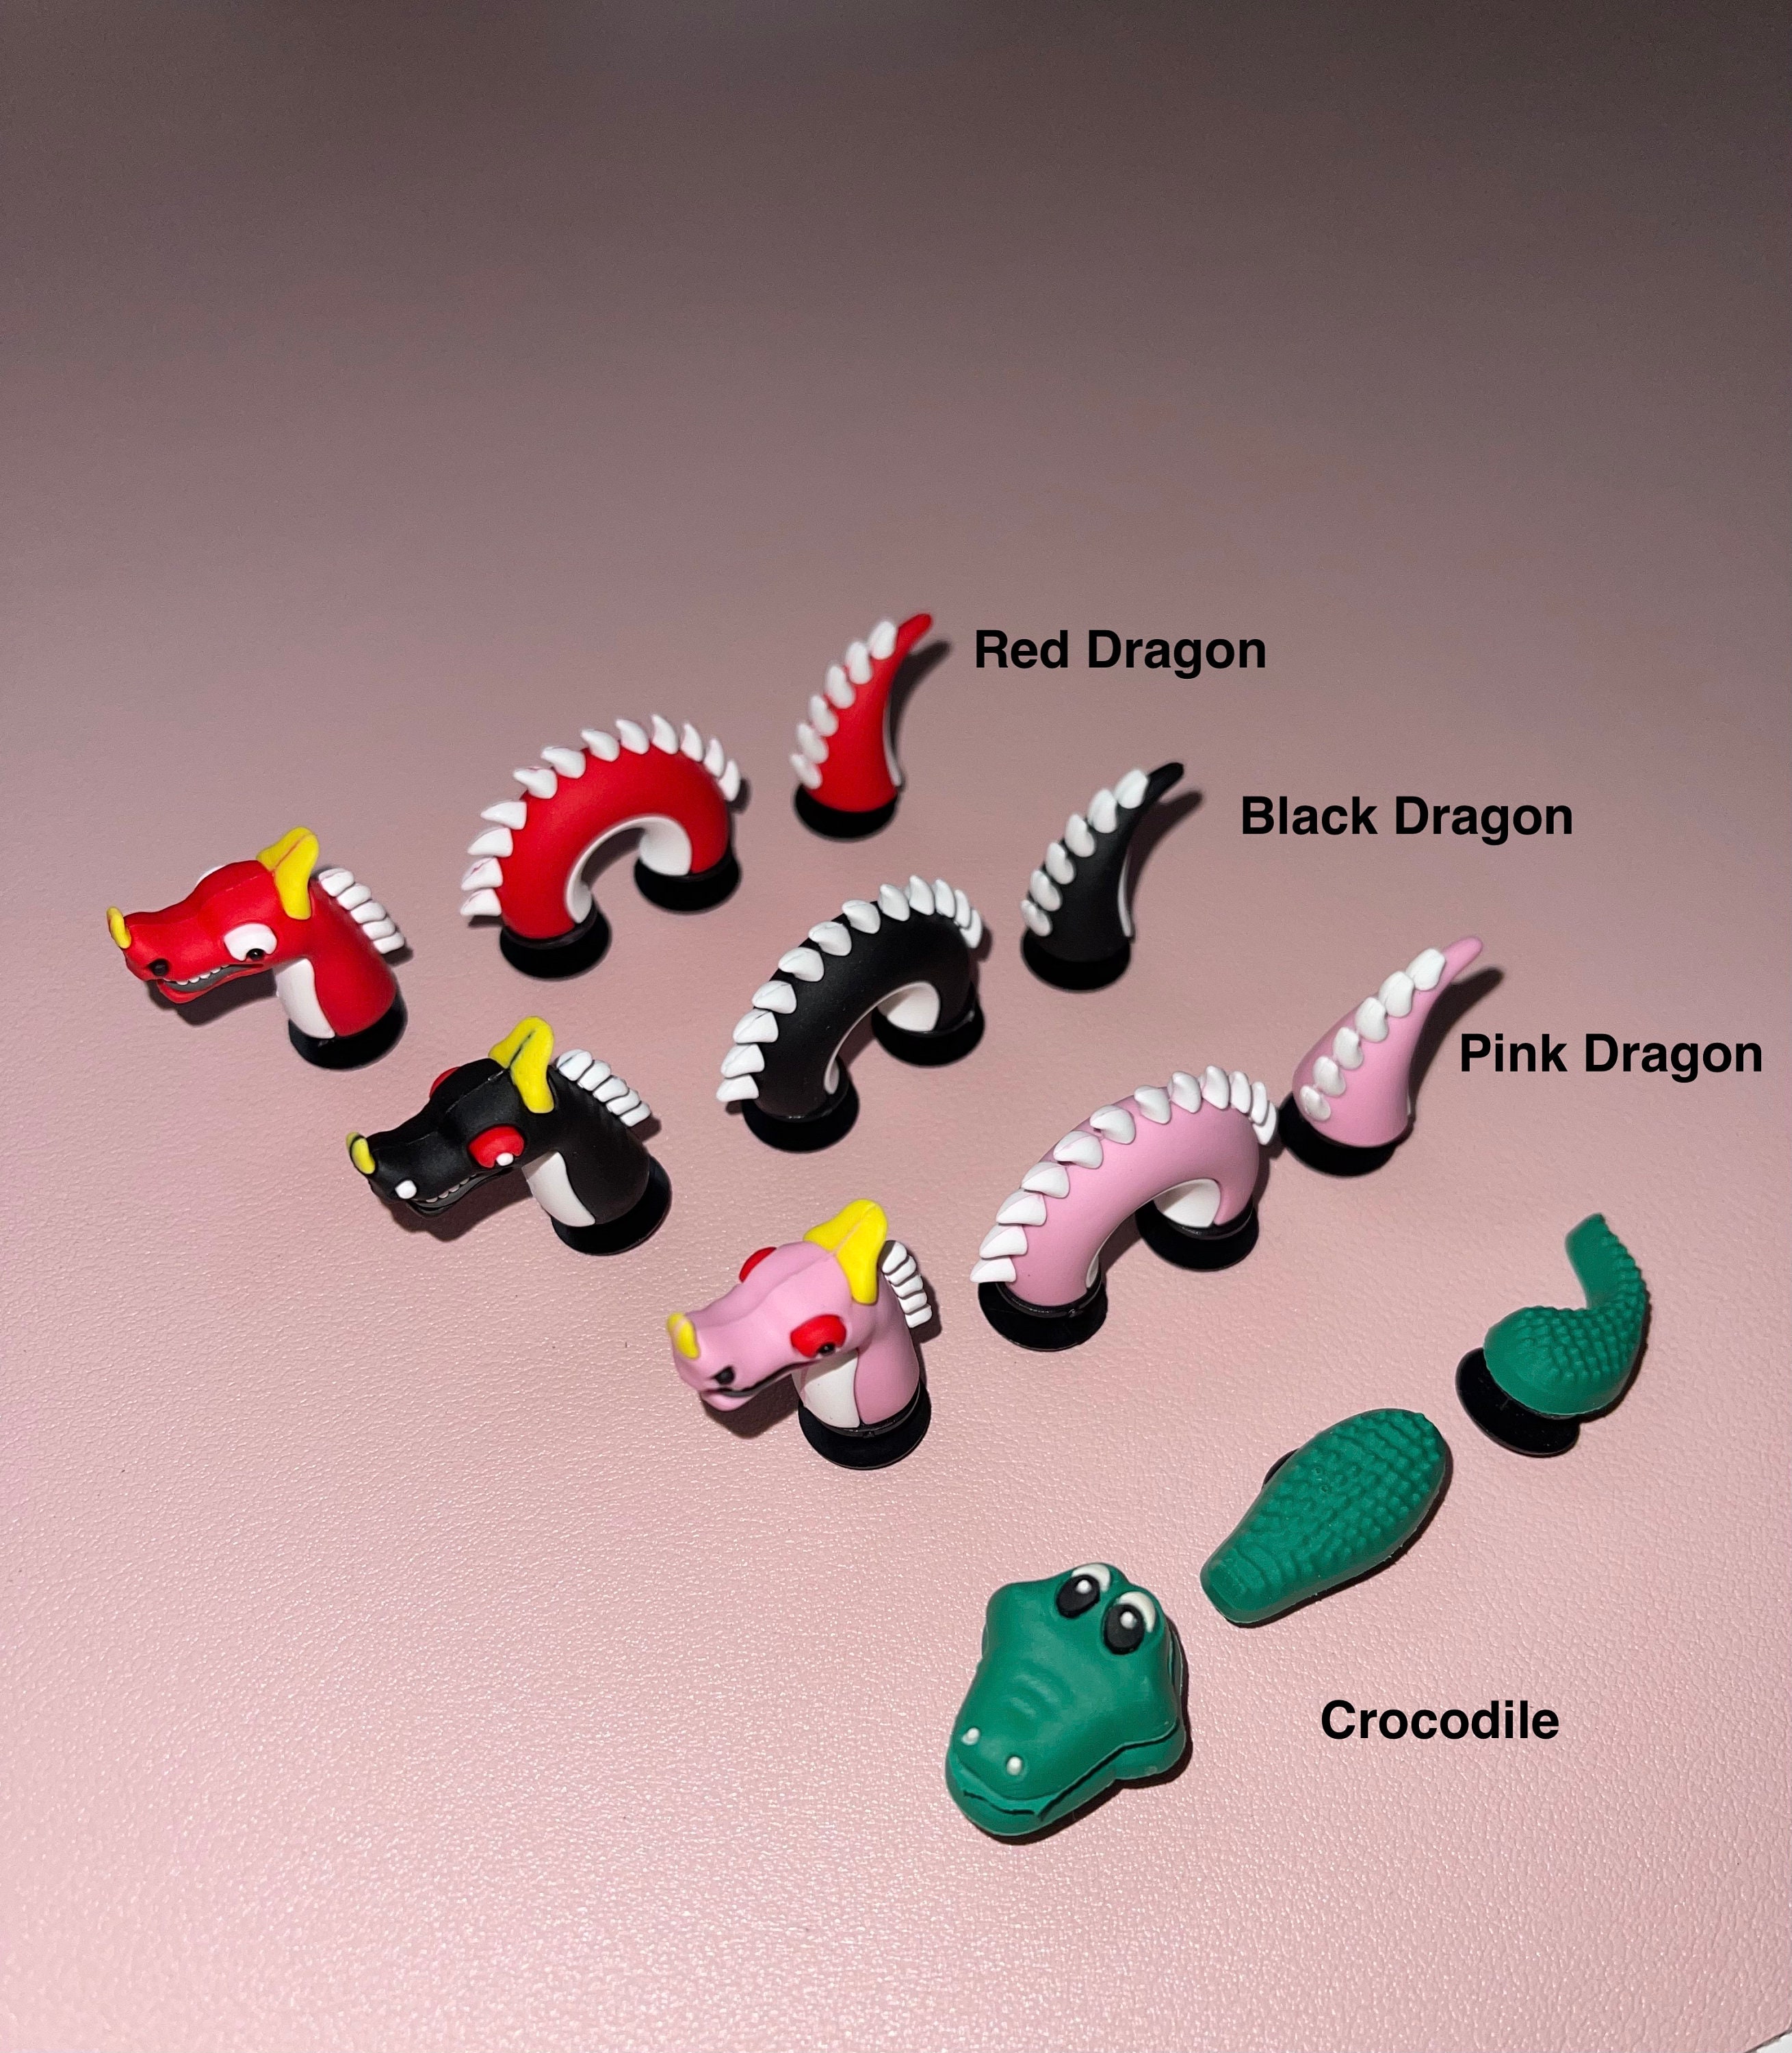 Crocs Accessories Dragon, Croc Accessories Funny